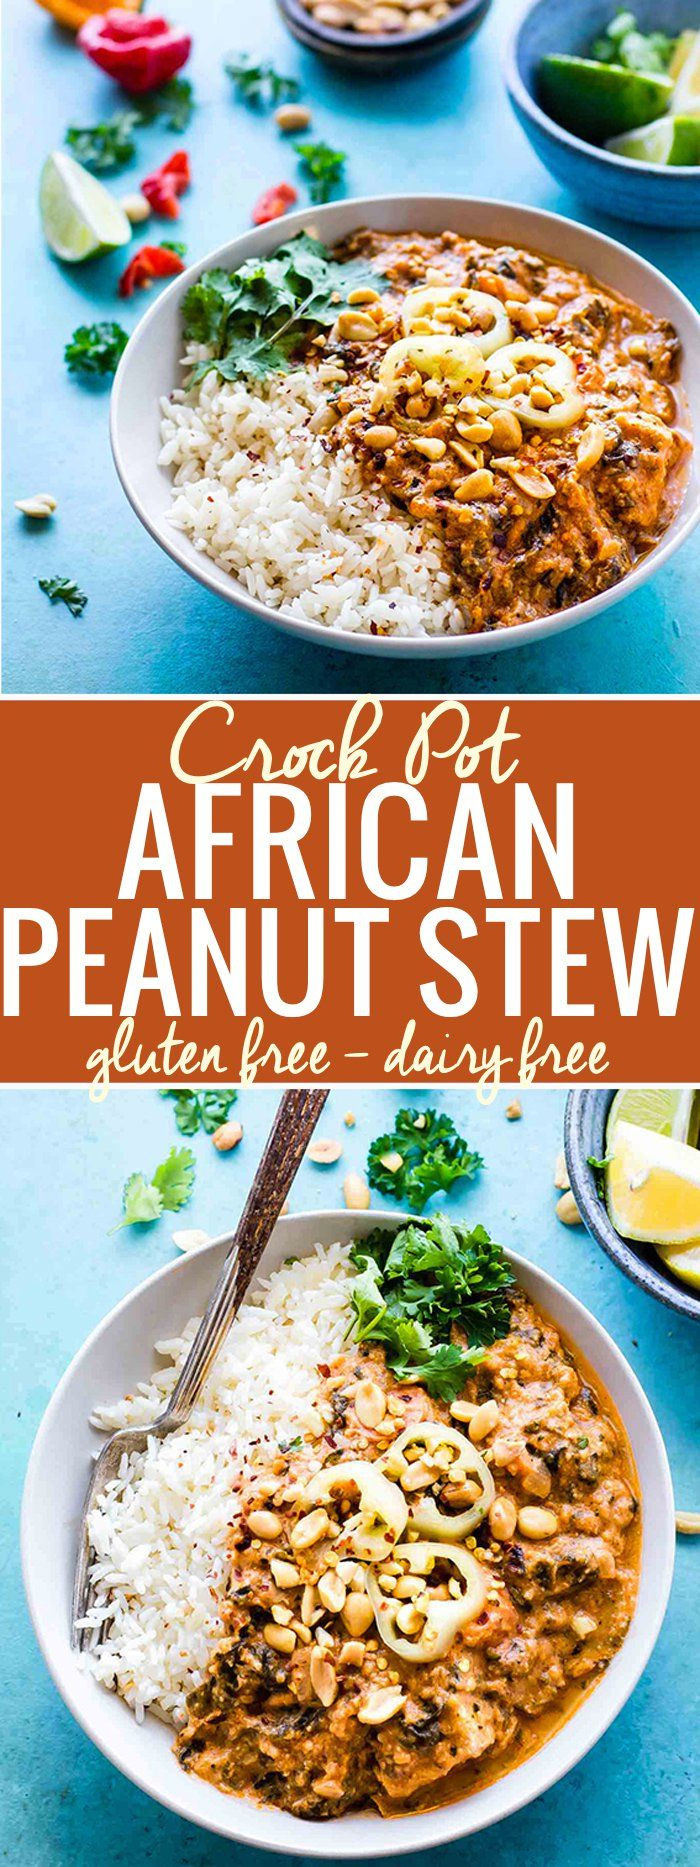 Dairy Free Crock Pot Recipes
 Fiery Crock Pot West African Peanut Stew Gluten free